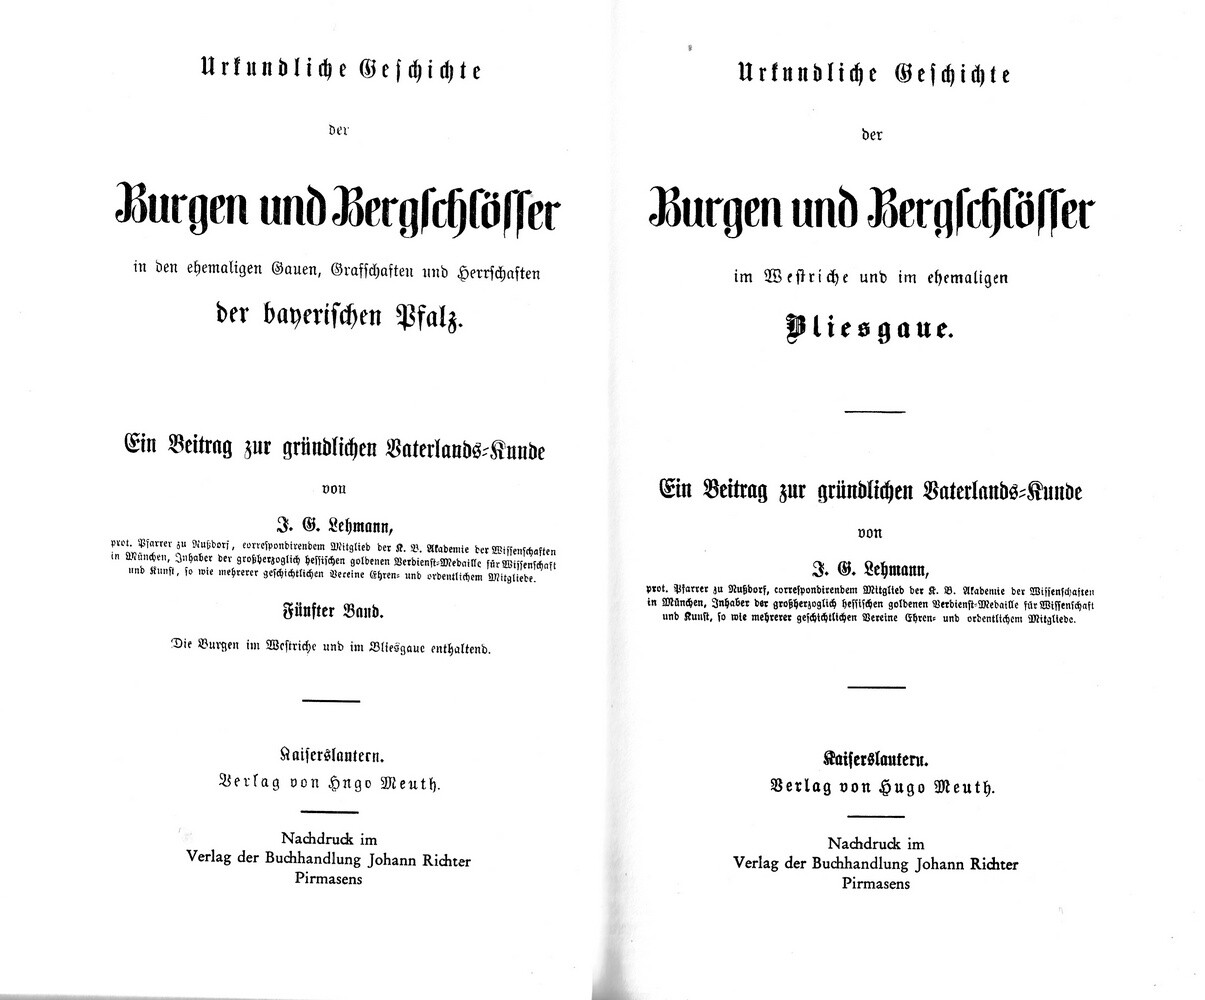 Urkundliche Geschichte der Burgen und Bergschlösser, Bd. 5 u. Register (1857/1969) (Kulturverein Guntersblum CC BY-NC-SA)